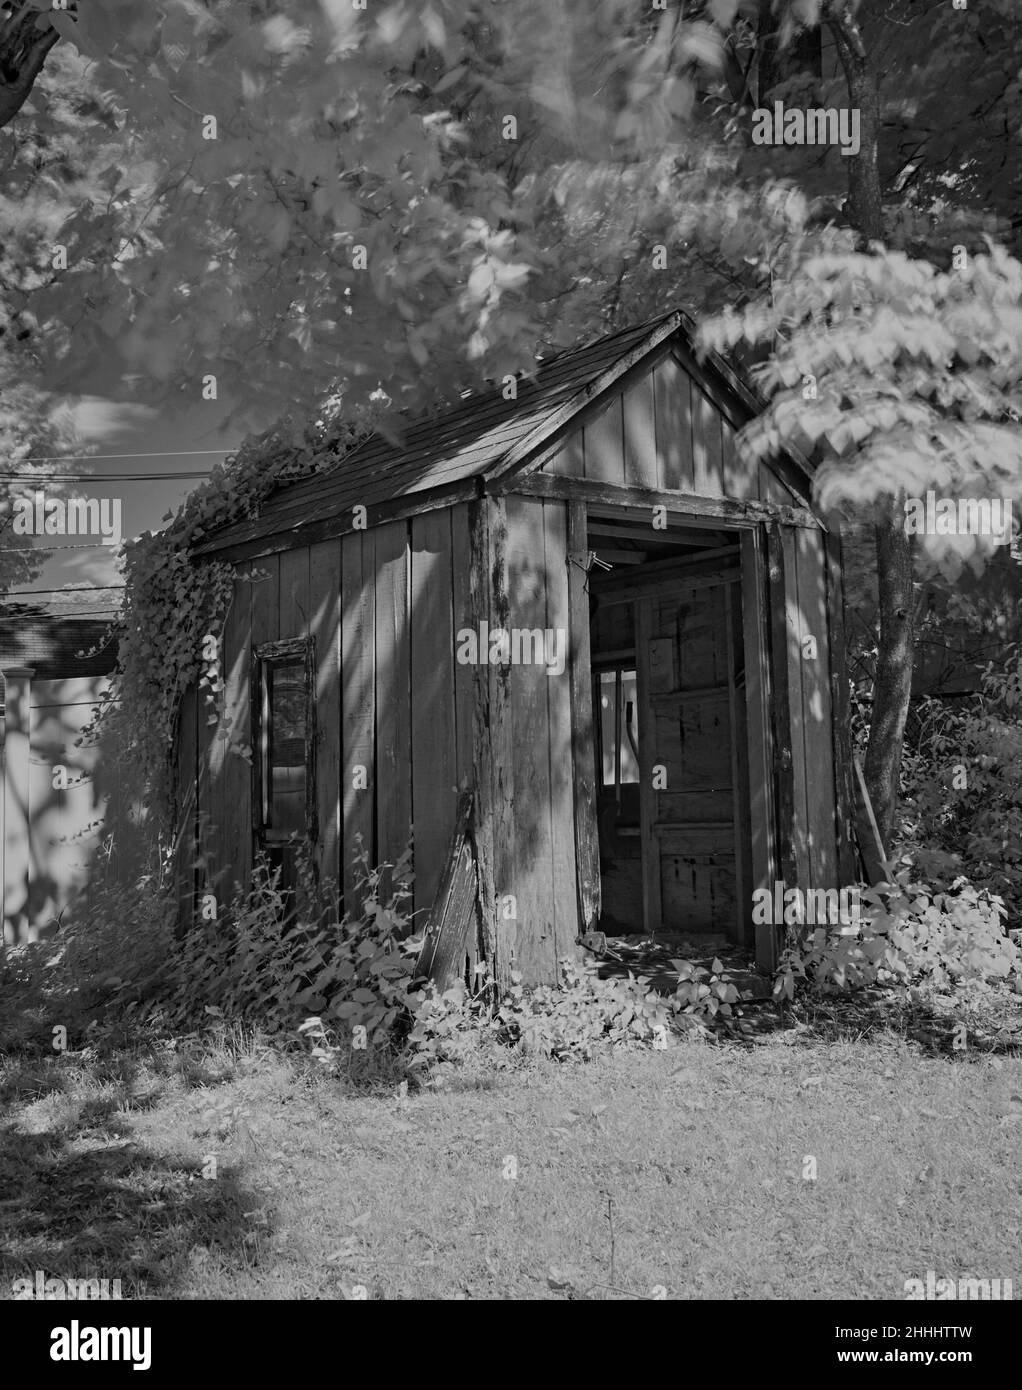 Ein niedliches kleines altes Dienstprogramm oder Lagerhaus. Fotografiert in Schwarz-Weiß und Infrarot. Gelegen in Ridgefield, New Jersey, USA. Stockfoto